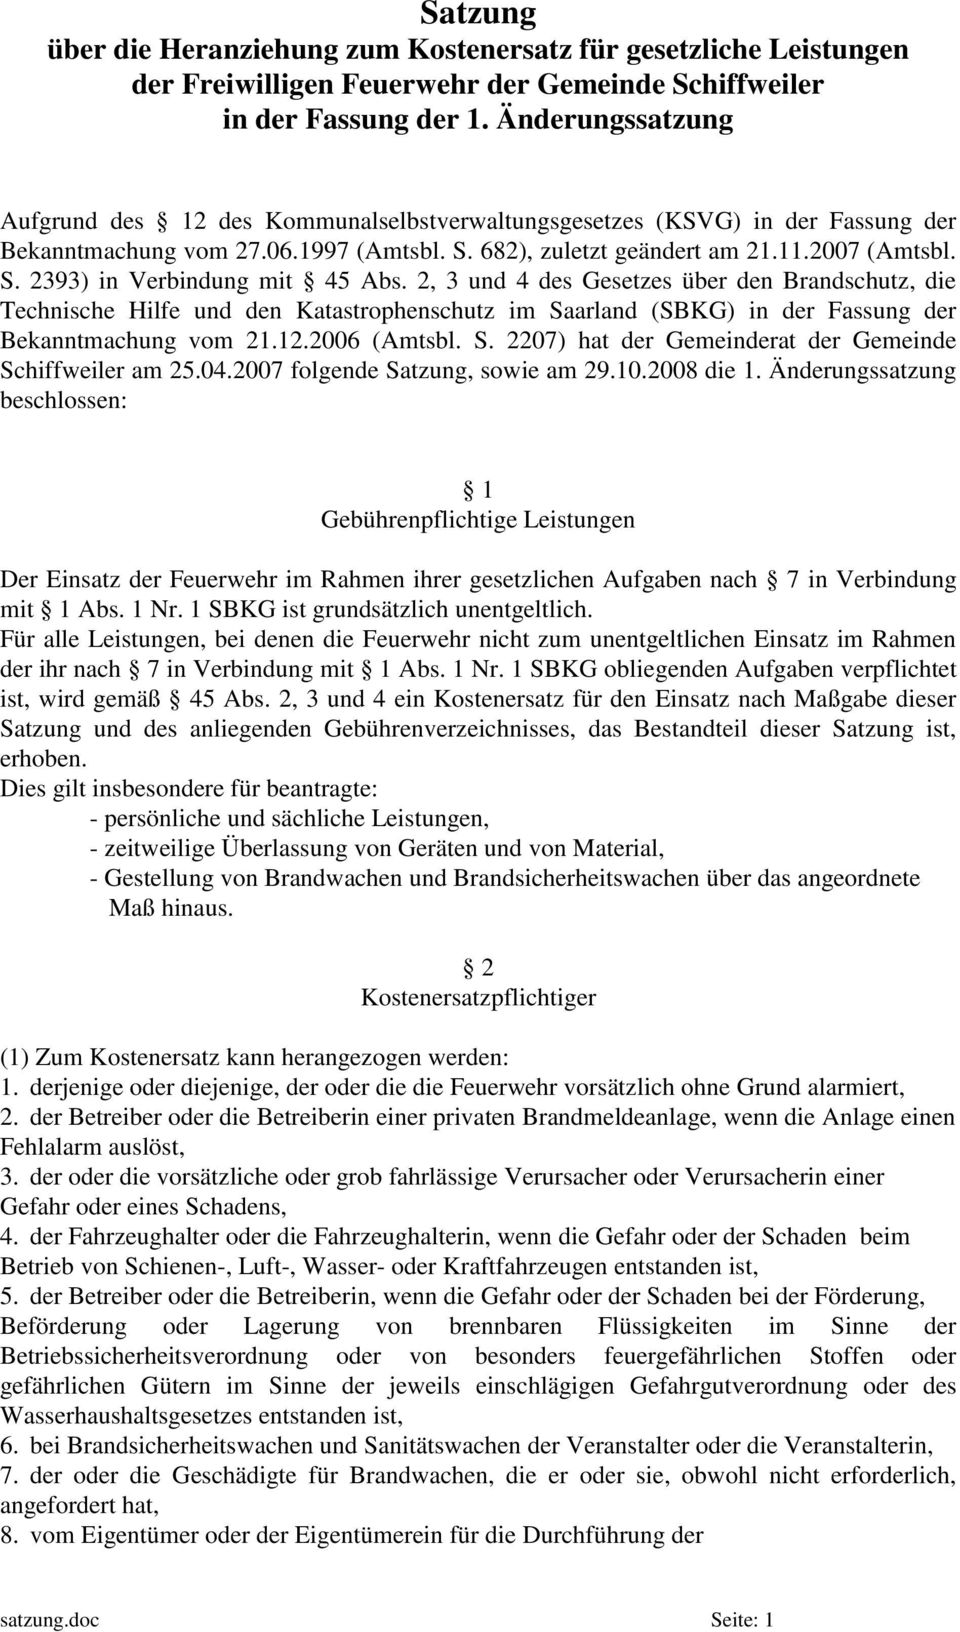 2, 3 und 4 des Gesetzes über den Brandschutz, die Technische Hilfe und den Katastrophenschutz im Saarland (SBKG) in der Fassung der Bekanntmachung vom 21.12.2006 (Amtsbl. S. 2207) hat der Gemeinderat der Gemeinde Schiffweiler am 25.